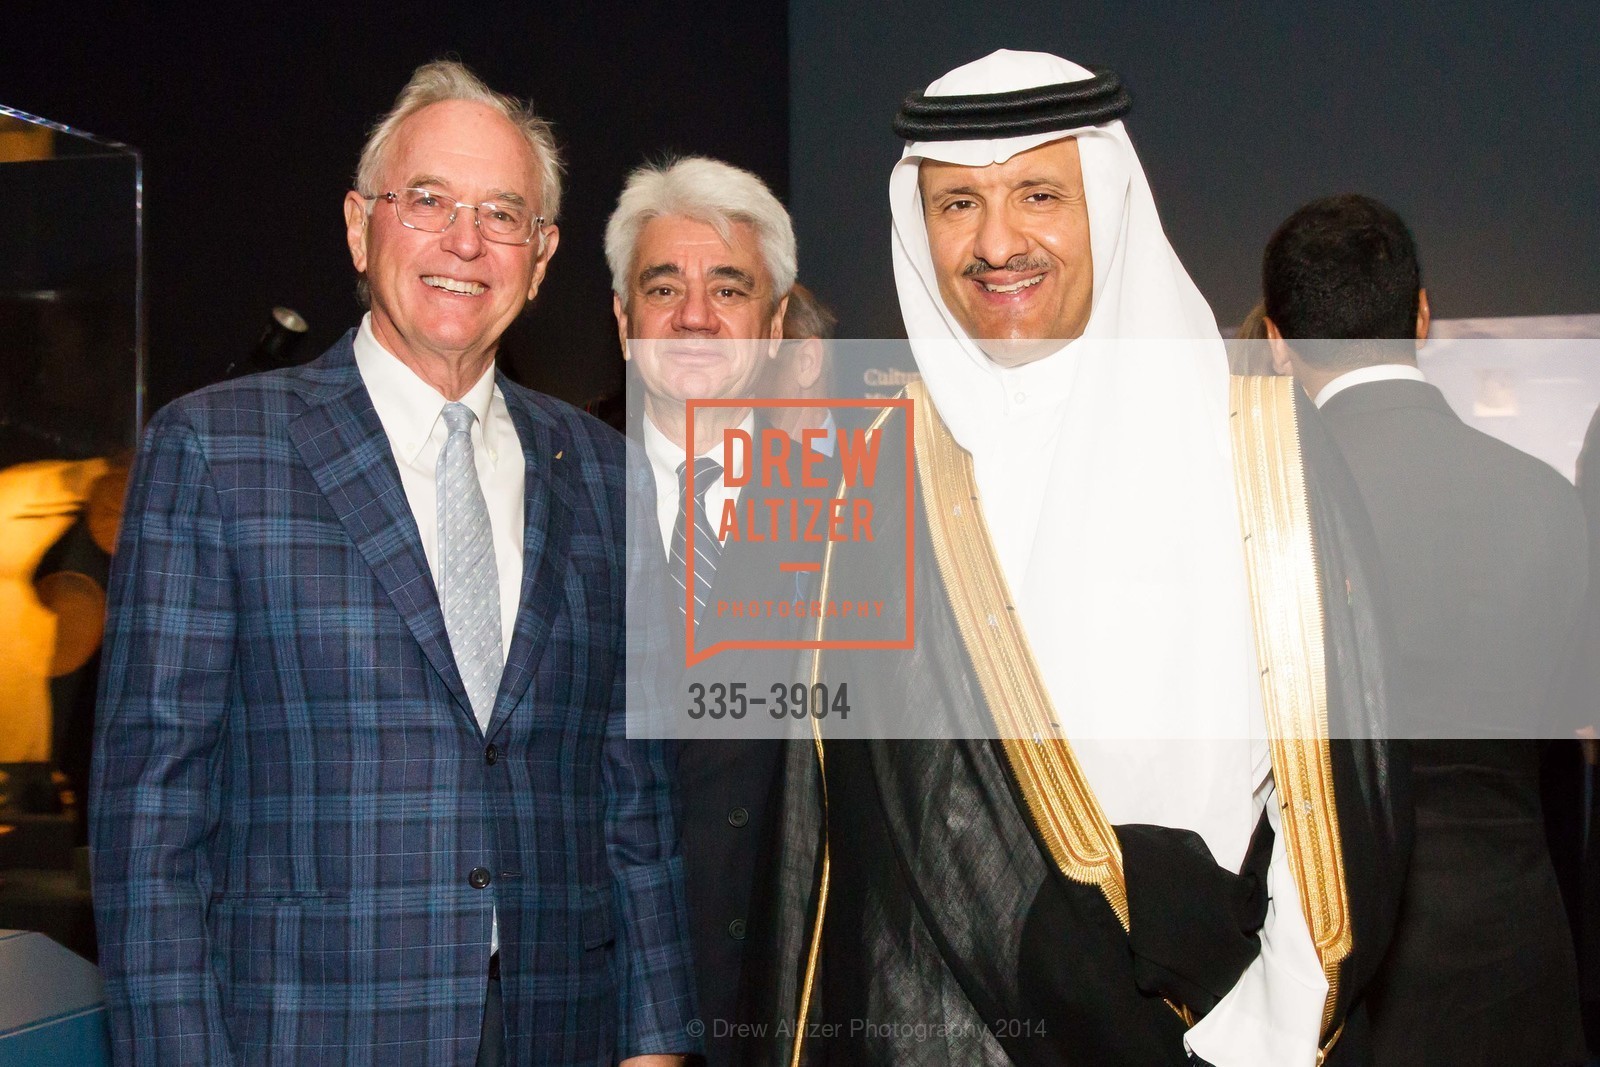 Joe Clark, David Sulzberger, Bin Salma Bin Abdulaziz Al Saud, Photo #335-3904